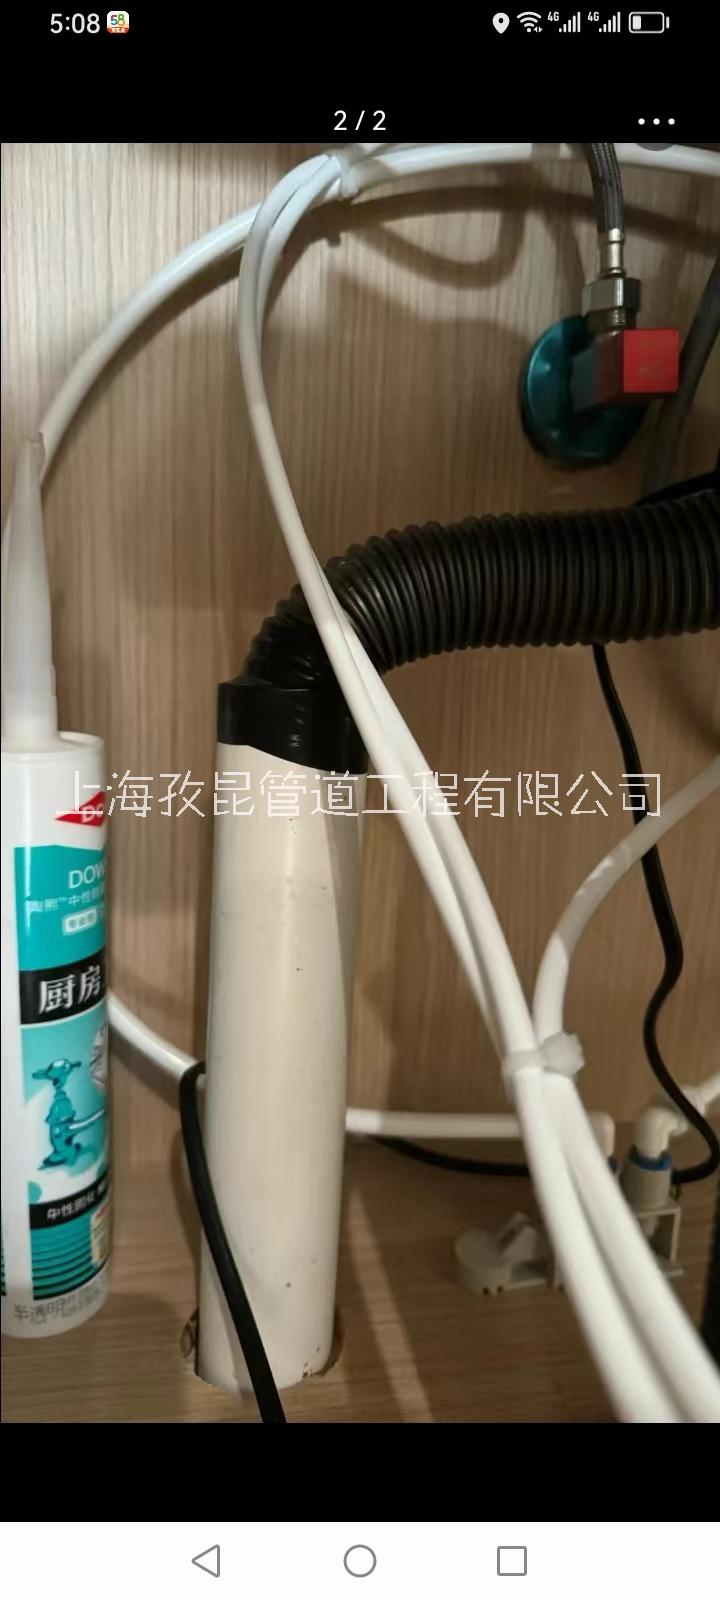 下水管漏水维修 上海黄浦区维修阳台水管漏水 下水管内窥镜检测 老西门水管安装图片